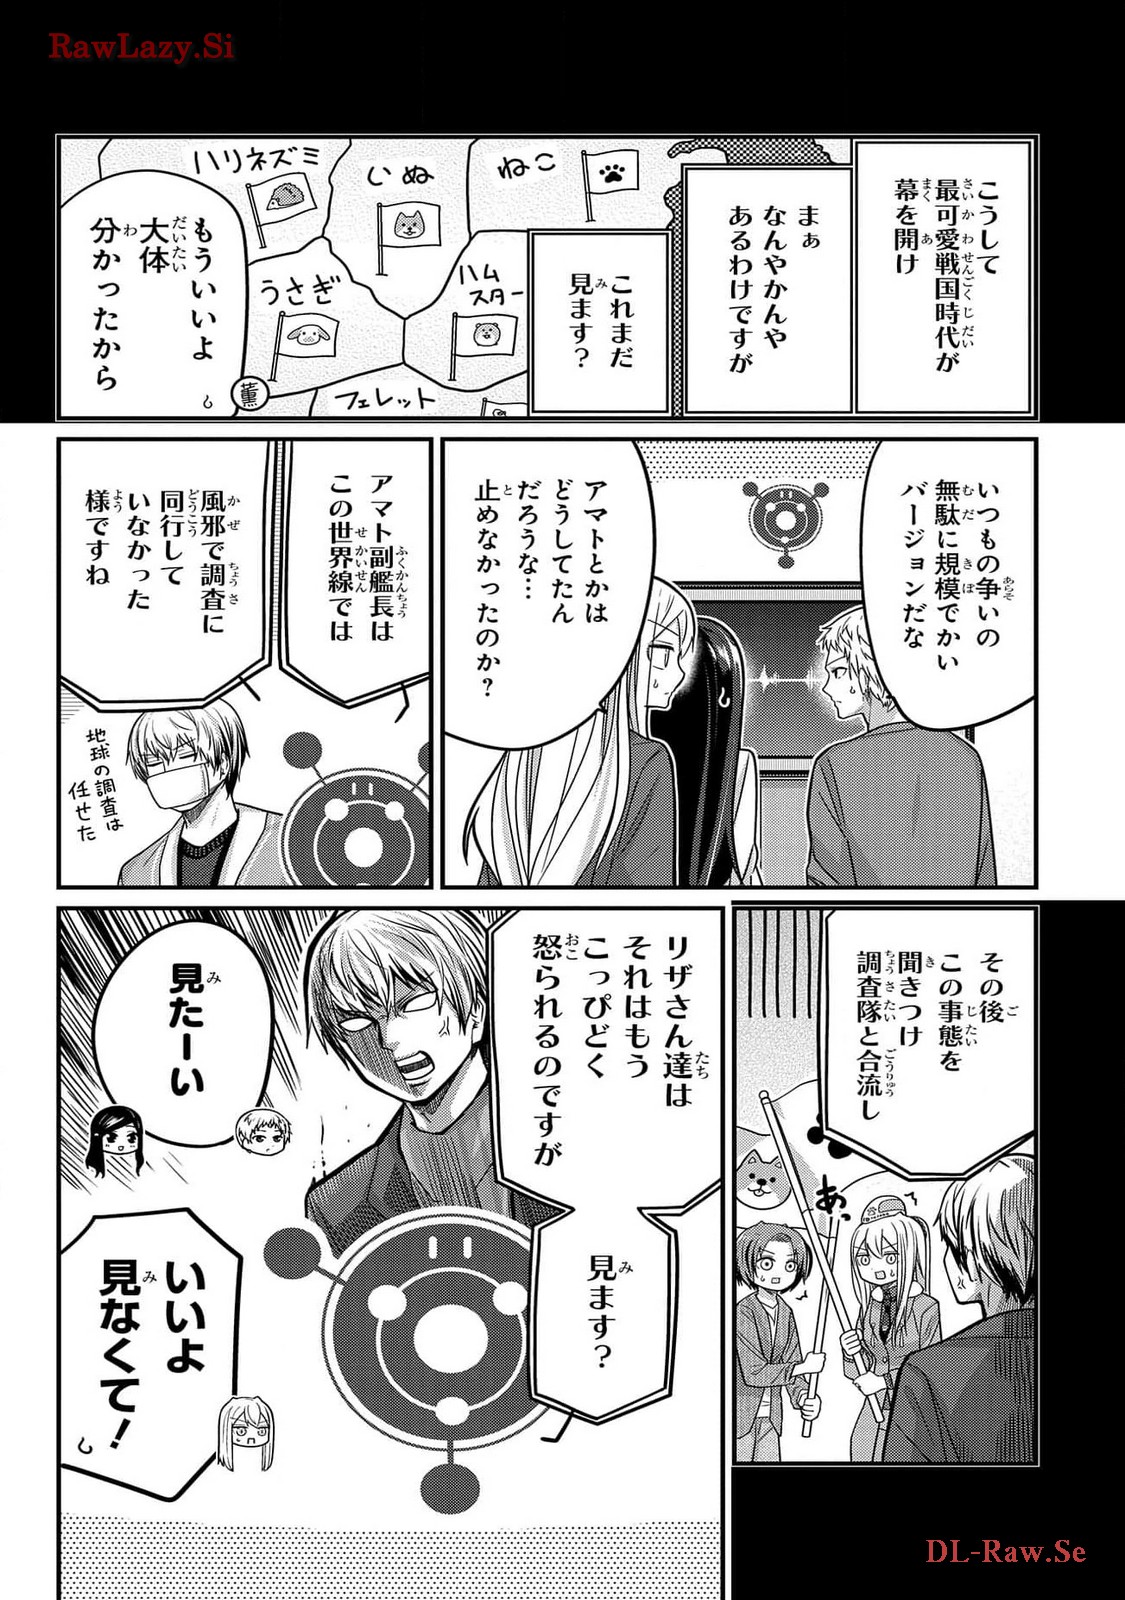 Kawaisugi Crisis - Chapter 97 - Page 18